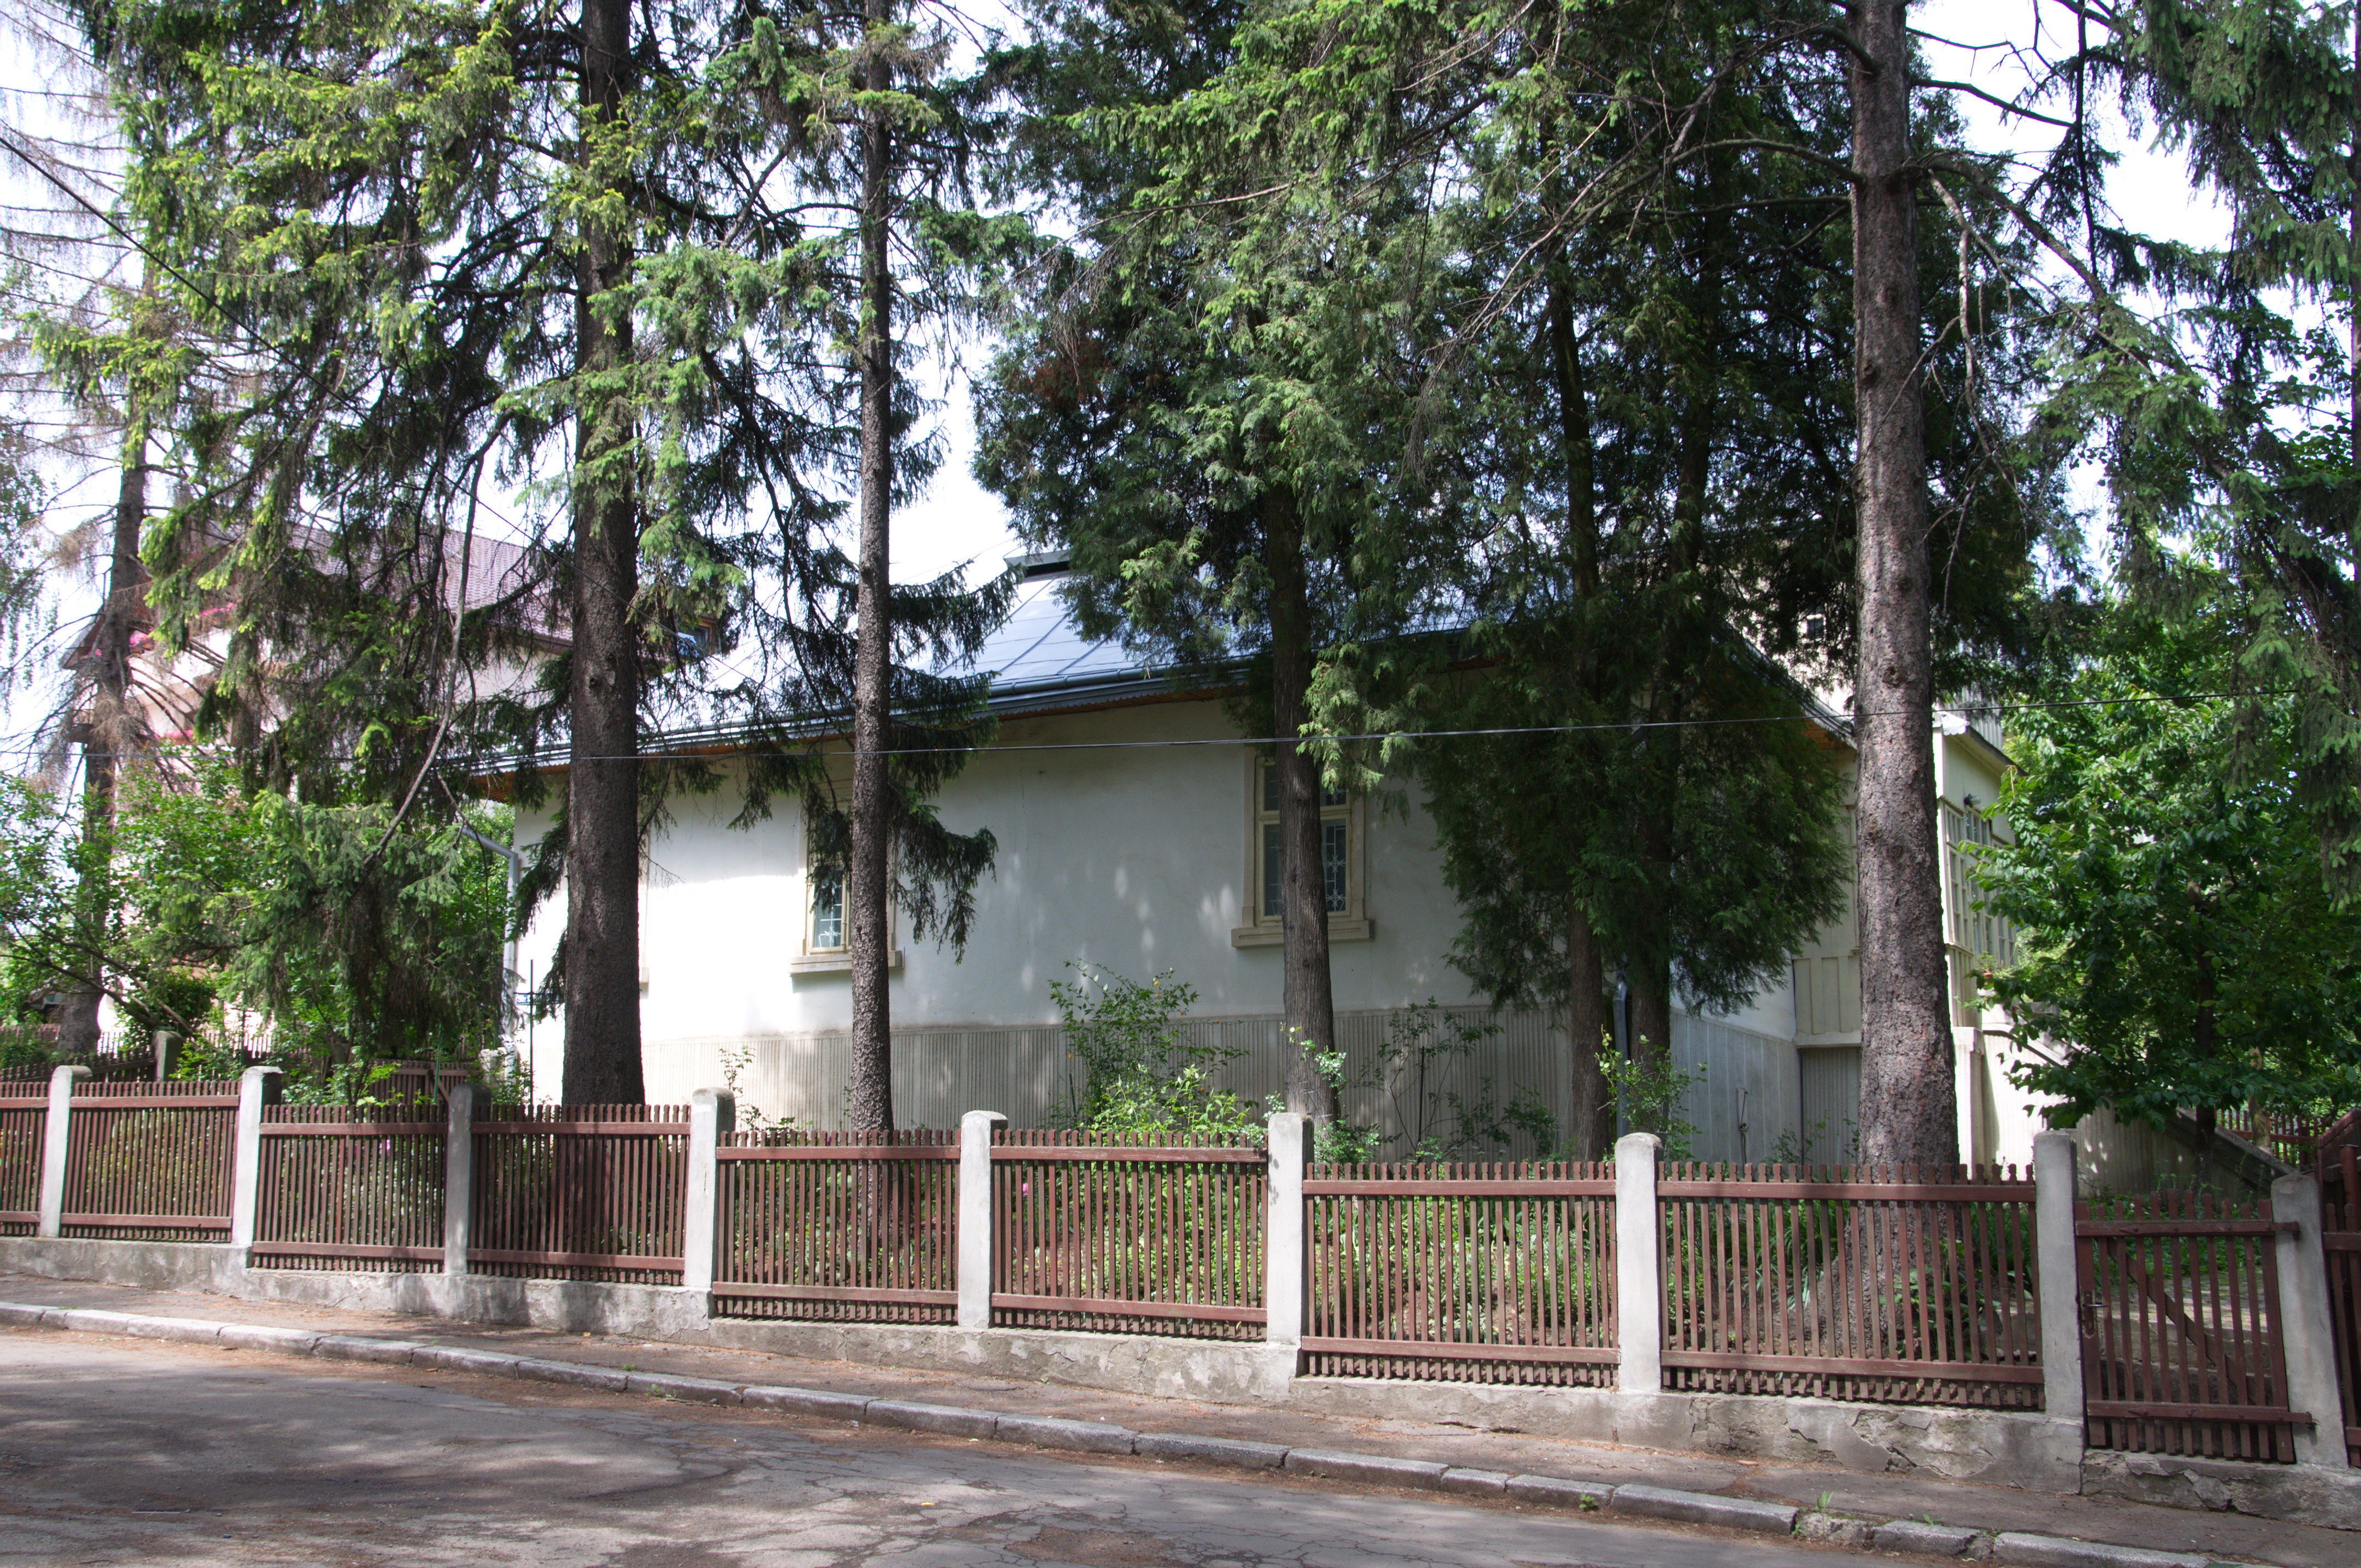 "Simion Florea Marian" Memorial House